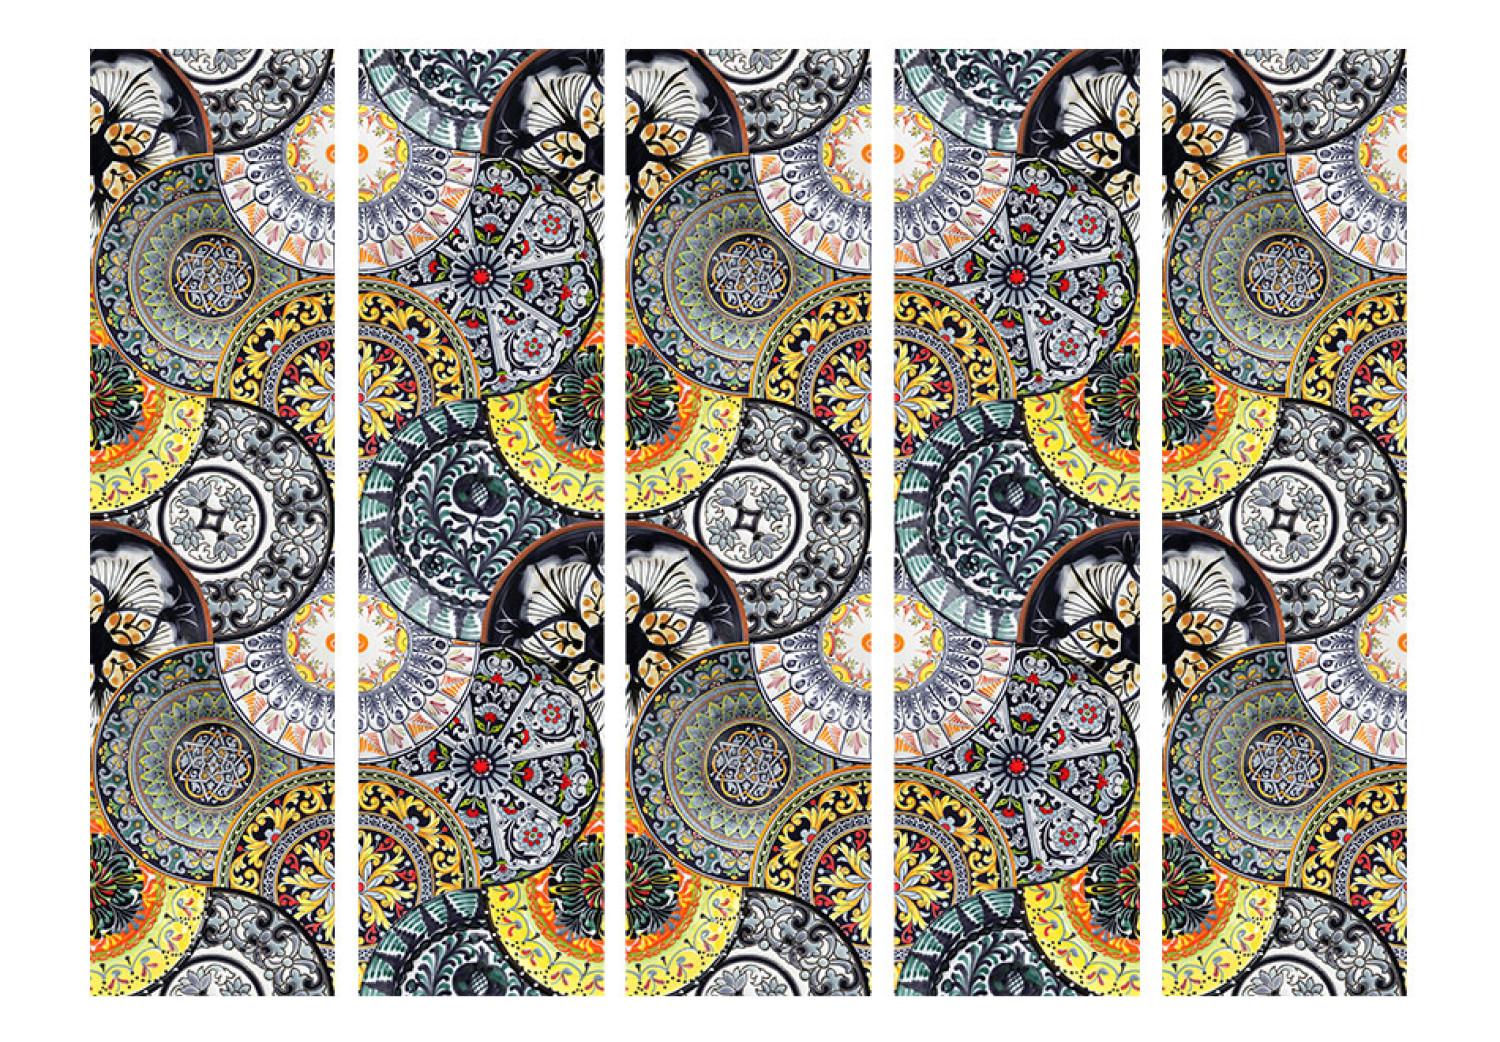 Biombo decorativo Exotismo pintado II - mosaico con motivo fantasioso y artístico